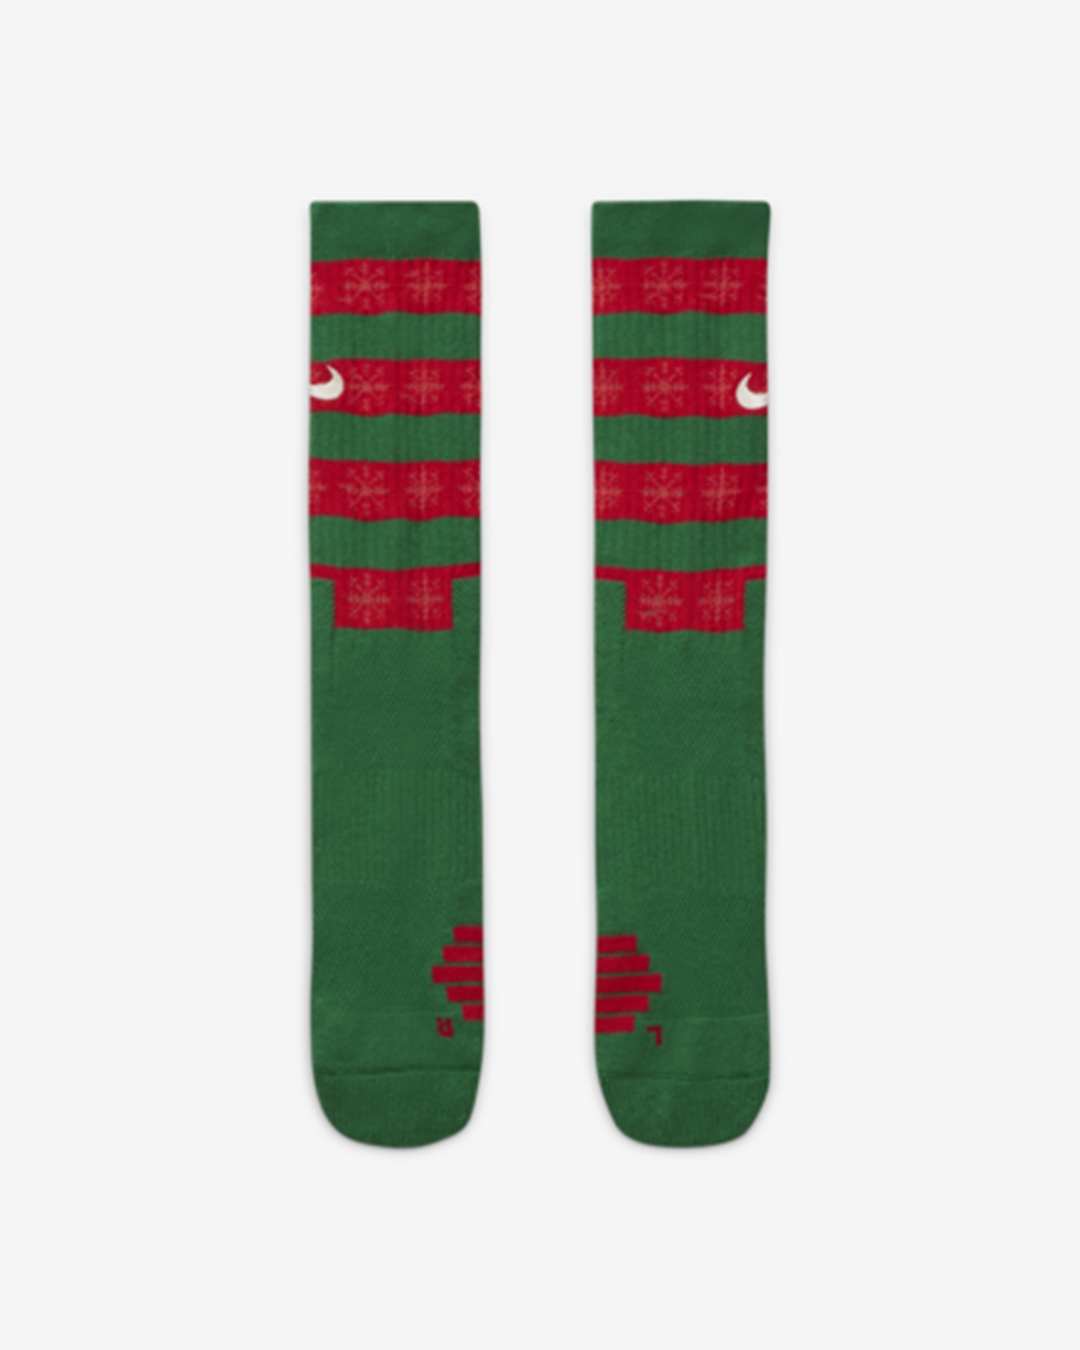 ナイキ からラッピングペーパーとユニークなクリスマスセーターをイメージした「エリート クリスマス クルー ソックス」が発売 (Nike Elite Xmas Basketball Crew Socks) [DA5097-312/DA5097-657]